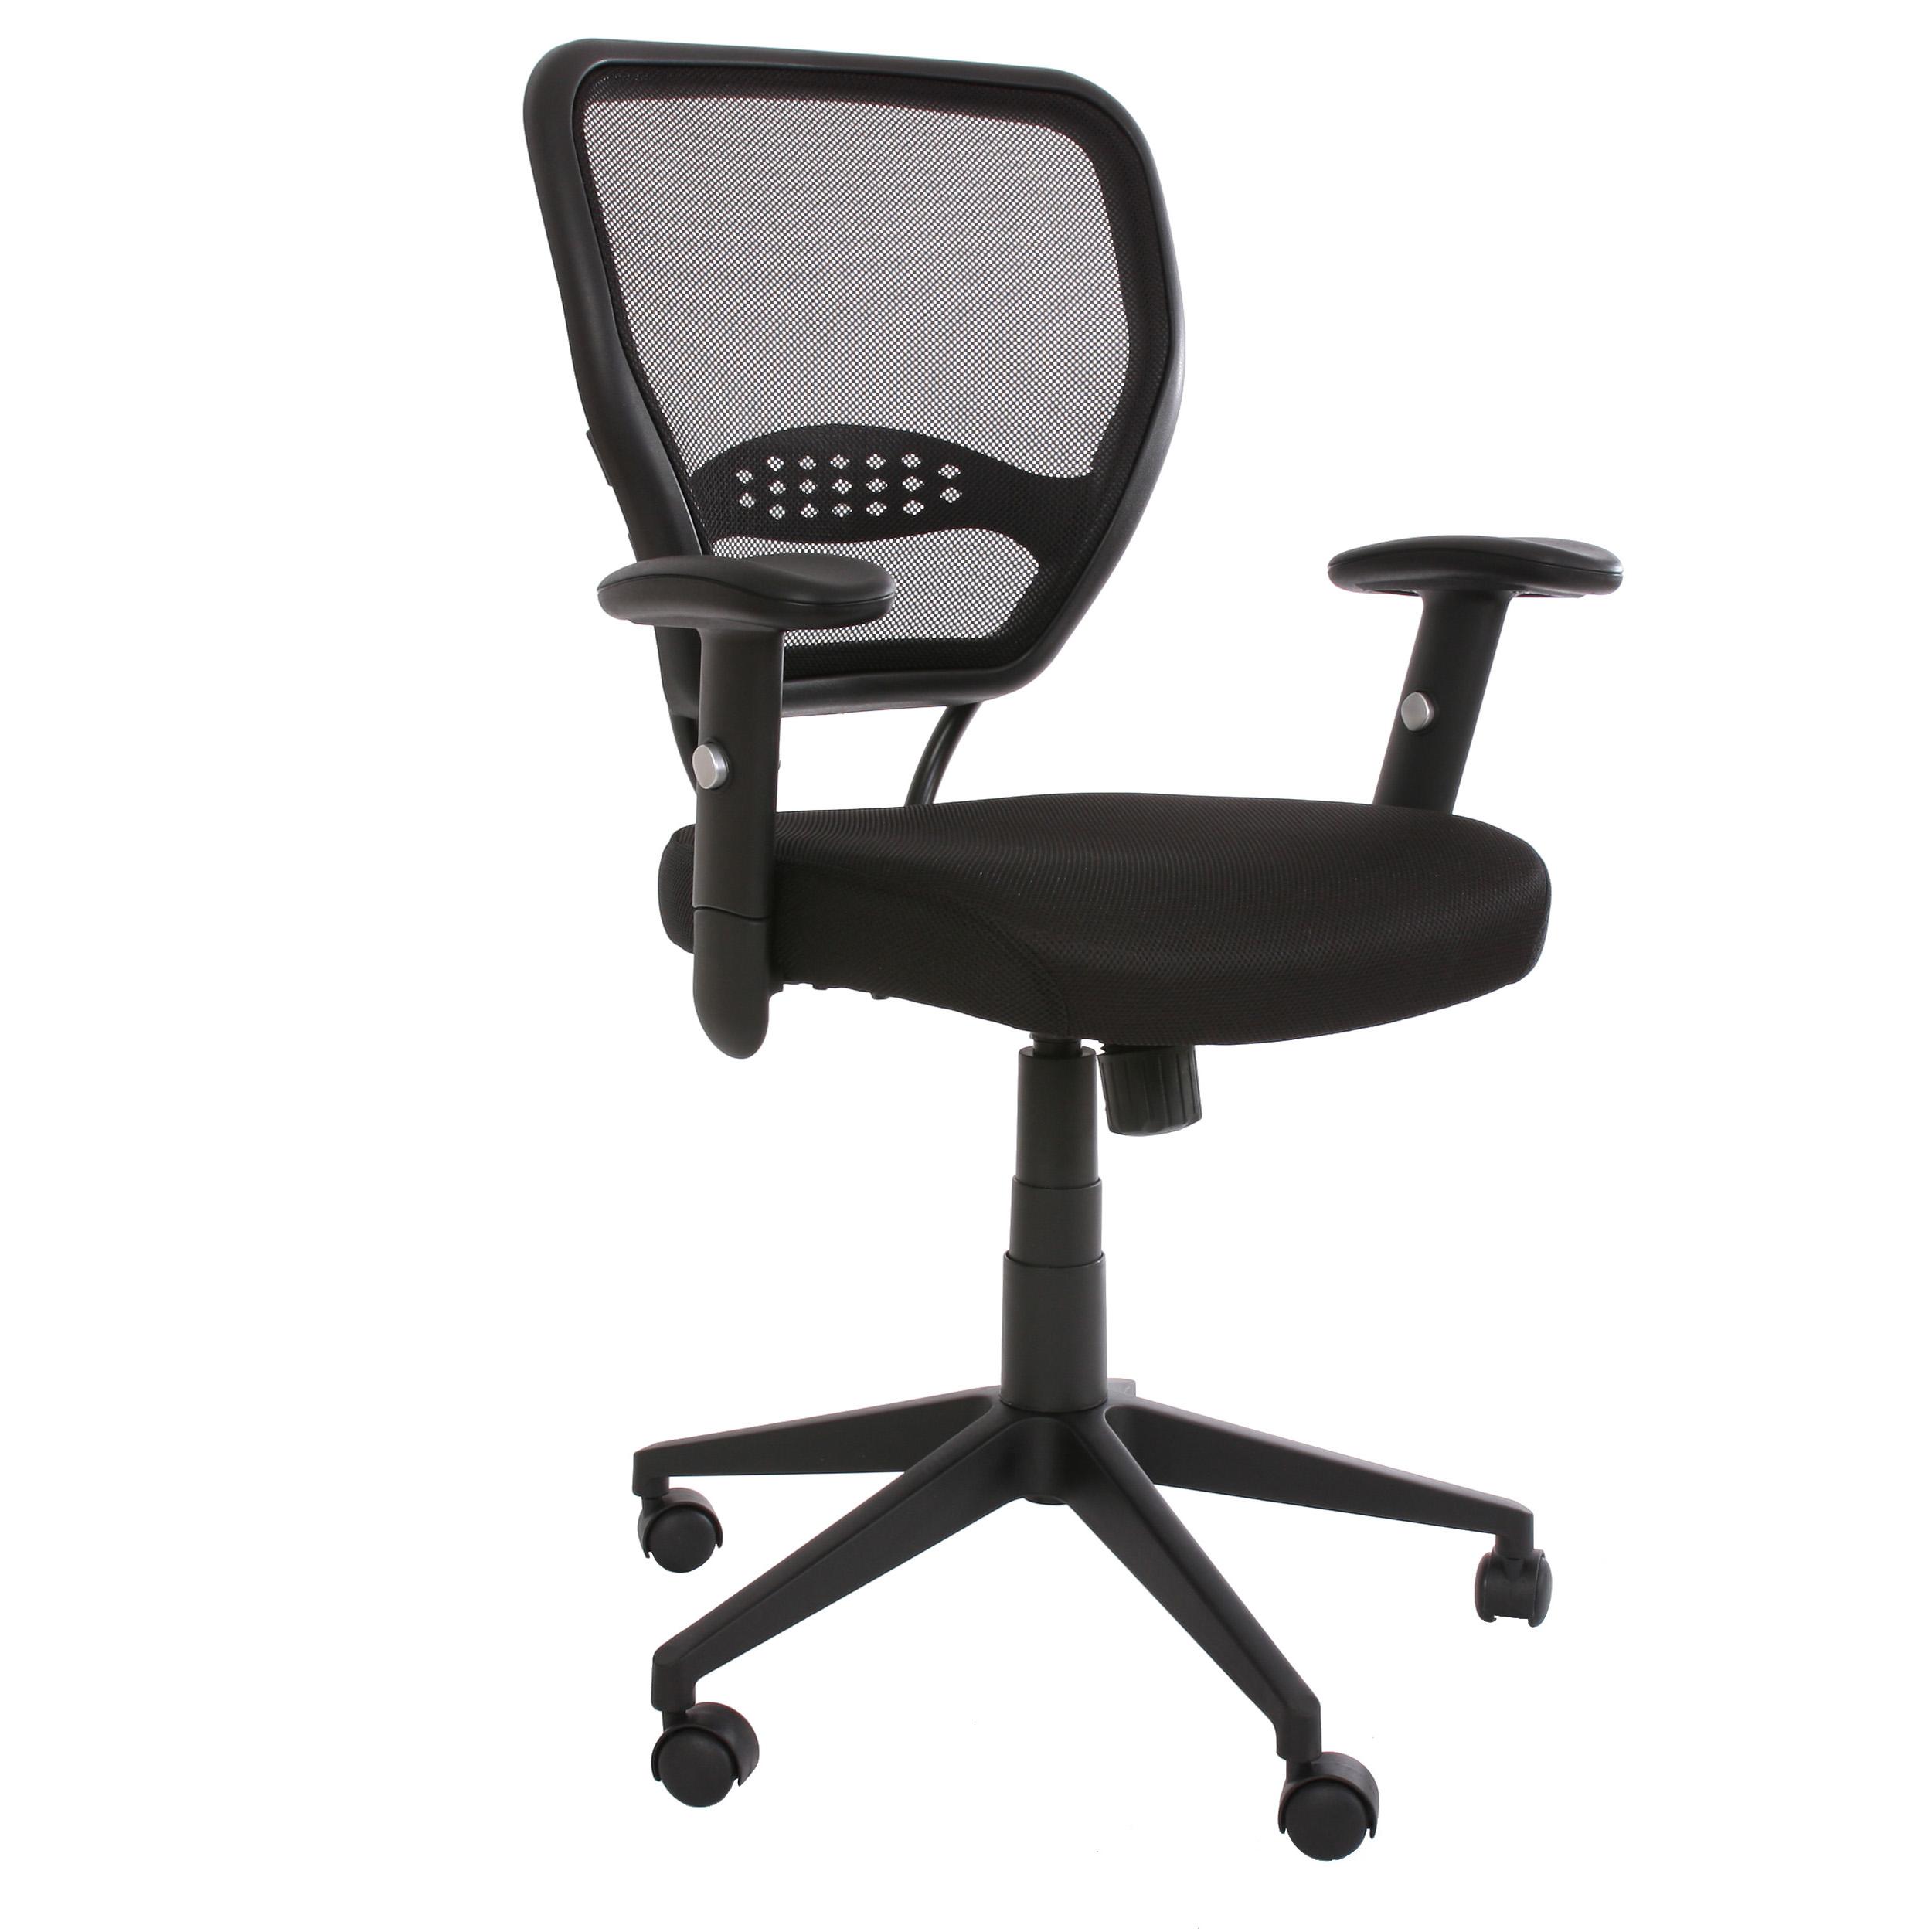 XXL-Bürostuhl TENOYA STOFF, bequeme Sitzpolsterung, Rückenlehne mit Netzbezug, Farbe Schwarz